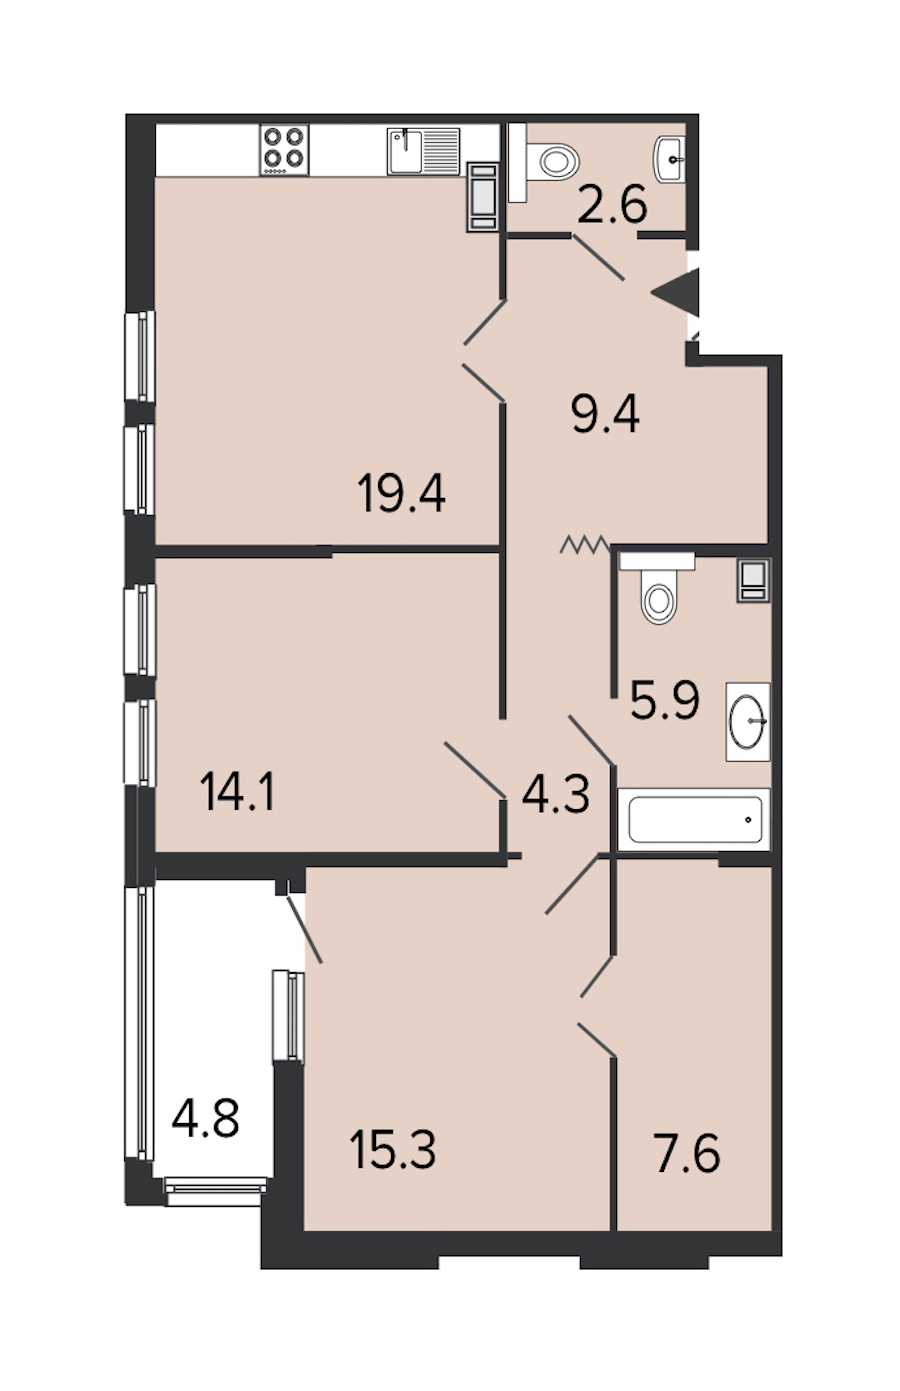 Двухкомнатная квартира в : площадь 78.6 м2 , этаж: 8 – купить в Санкт-Петербурге